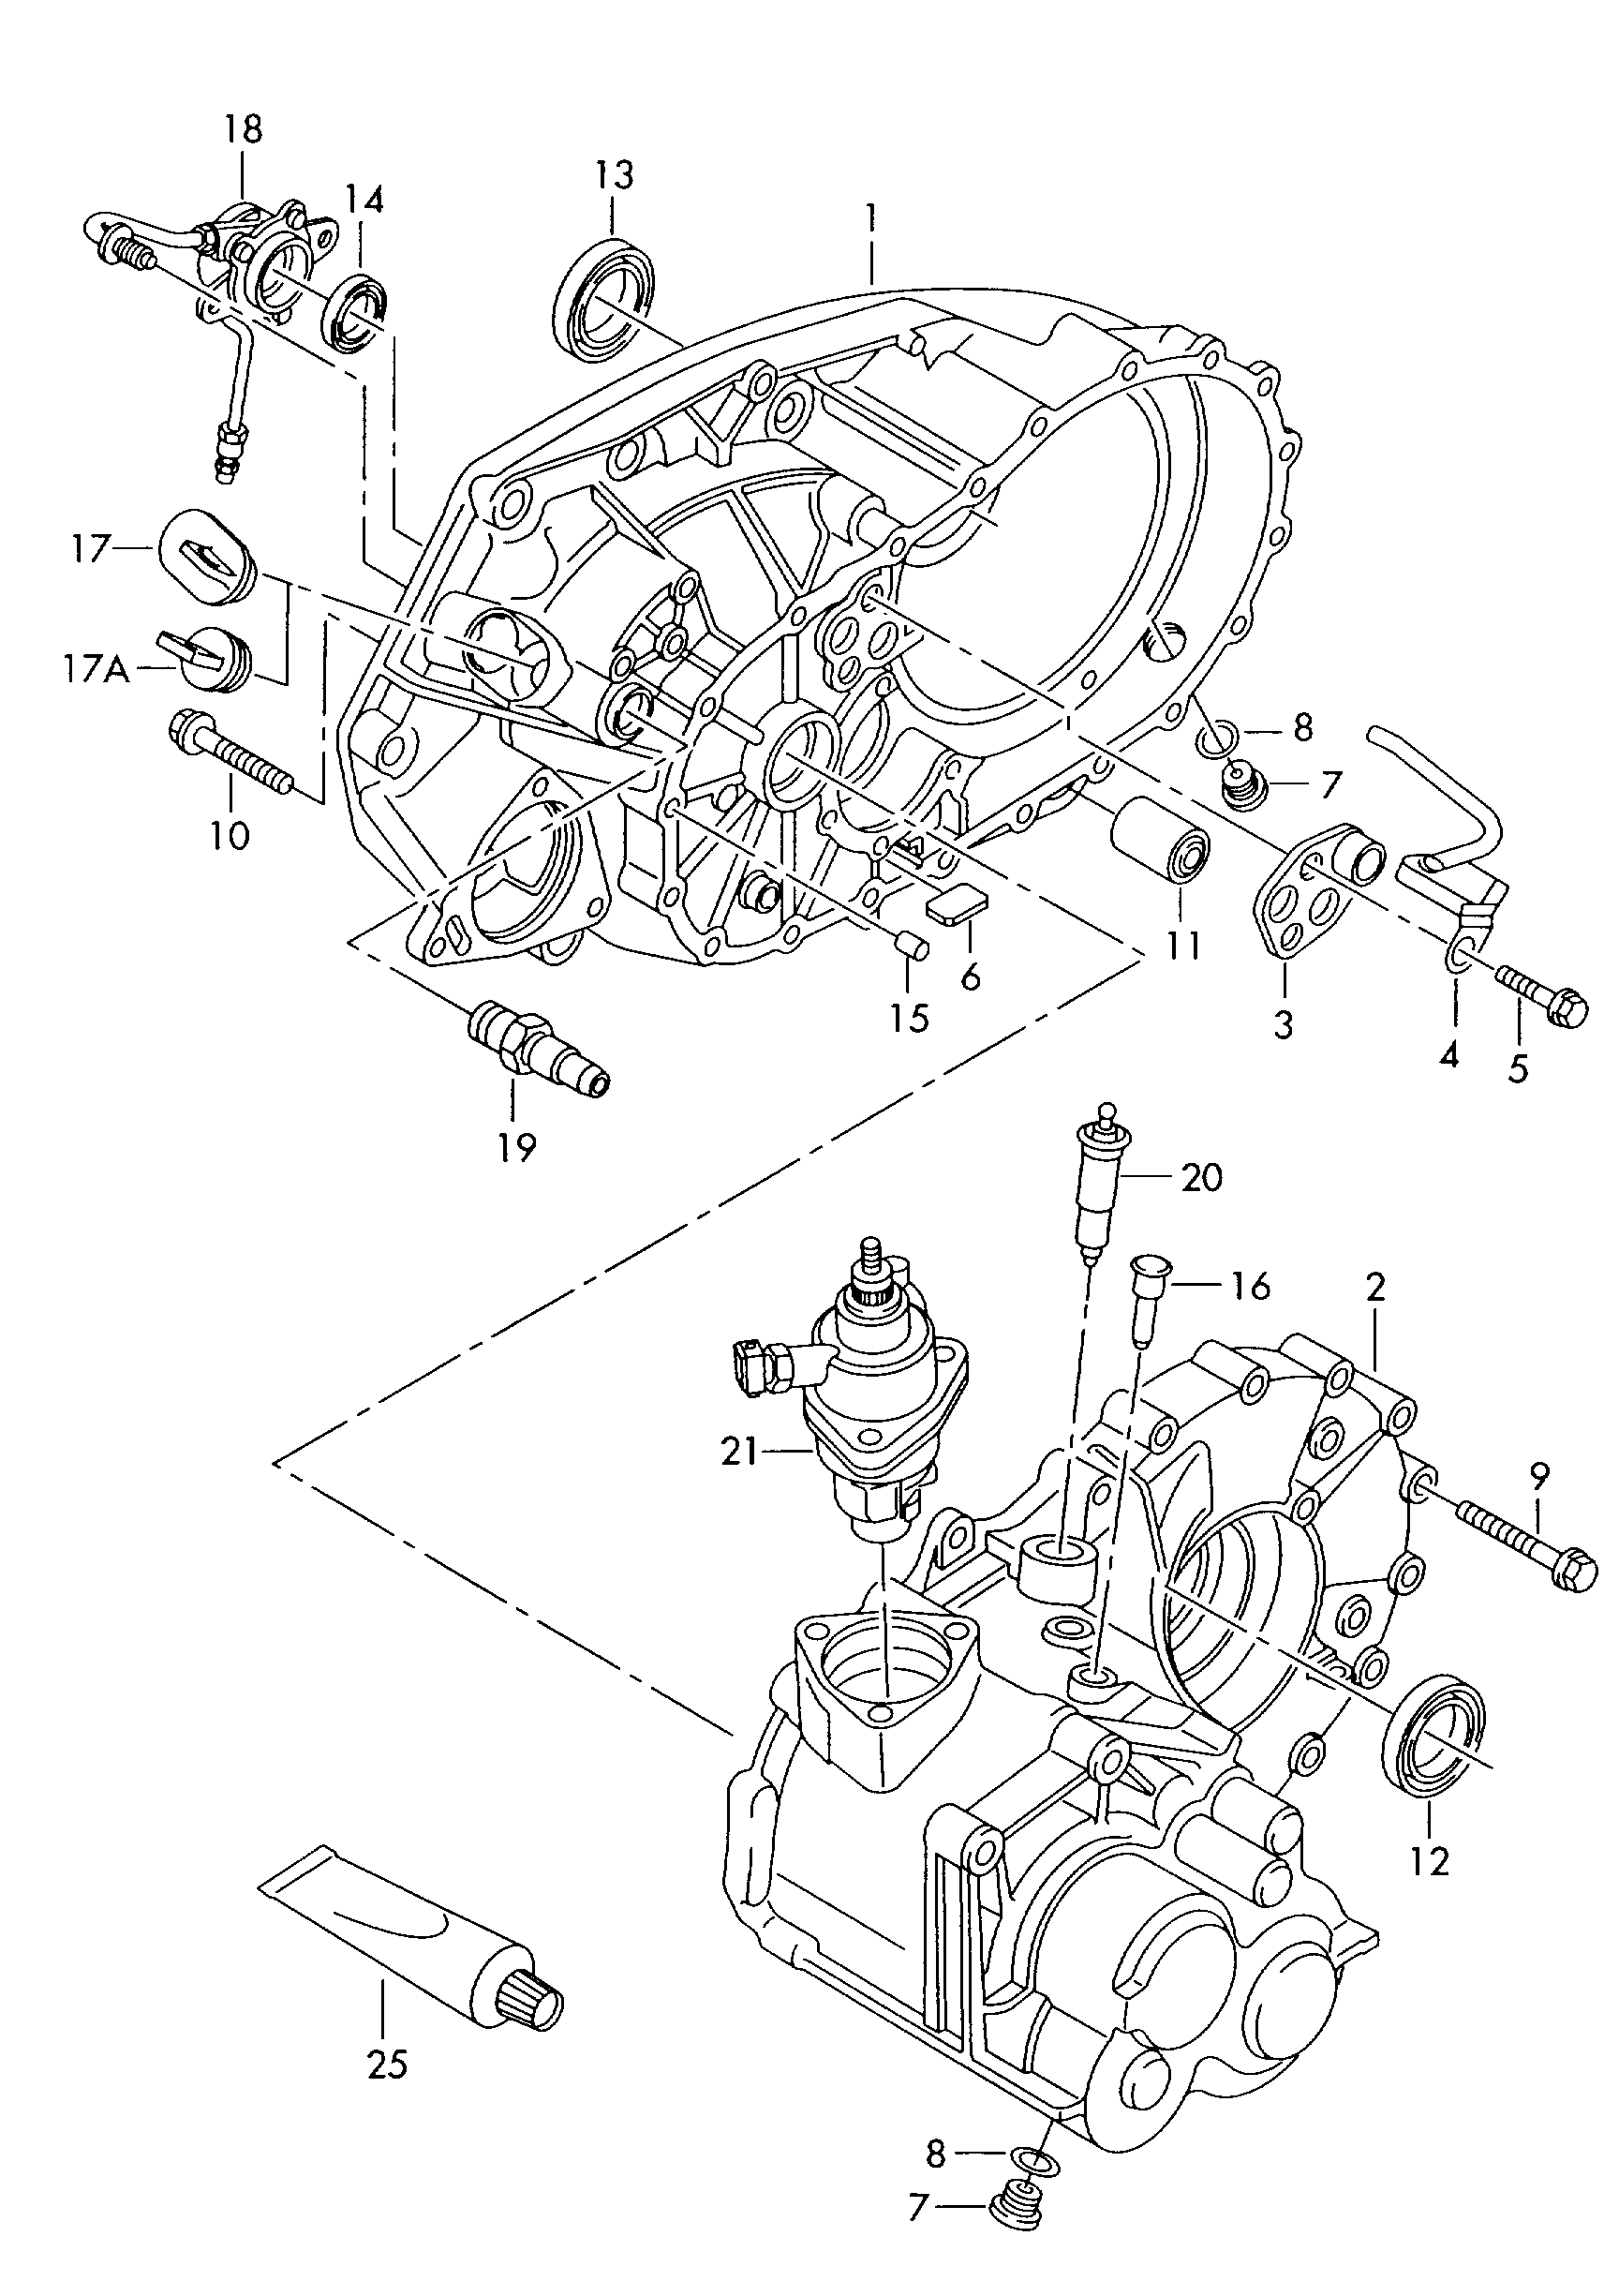 Getriebegehäusefür 5-Gang Schaltgetriebe  - Transporter - tr